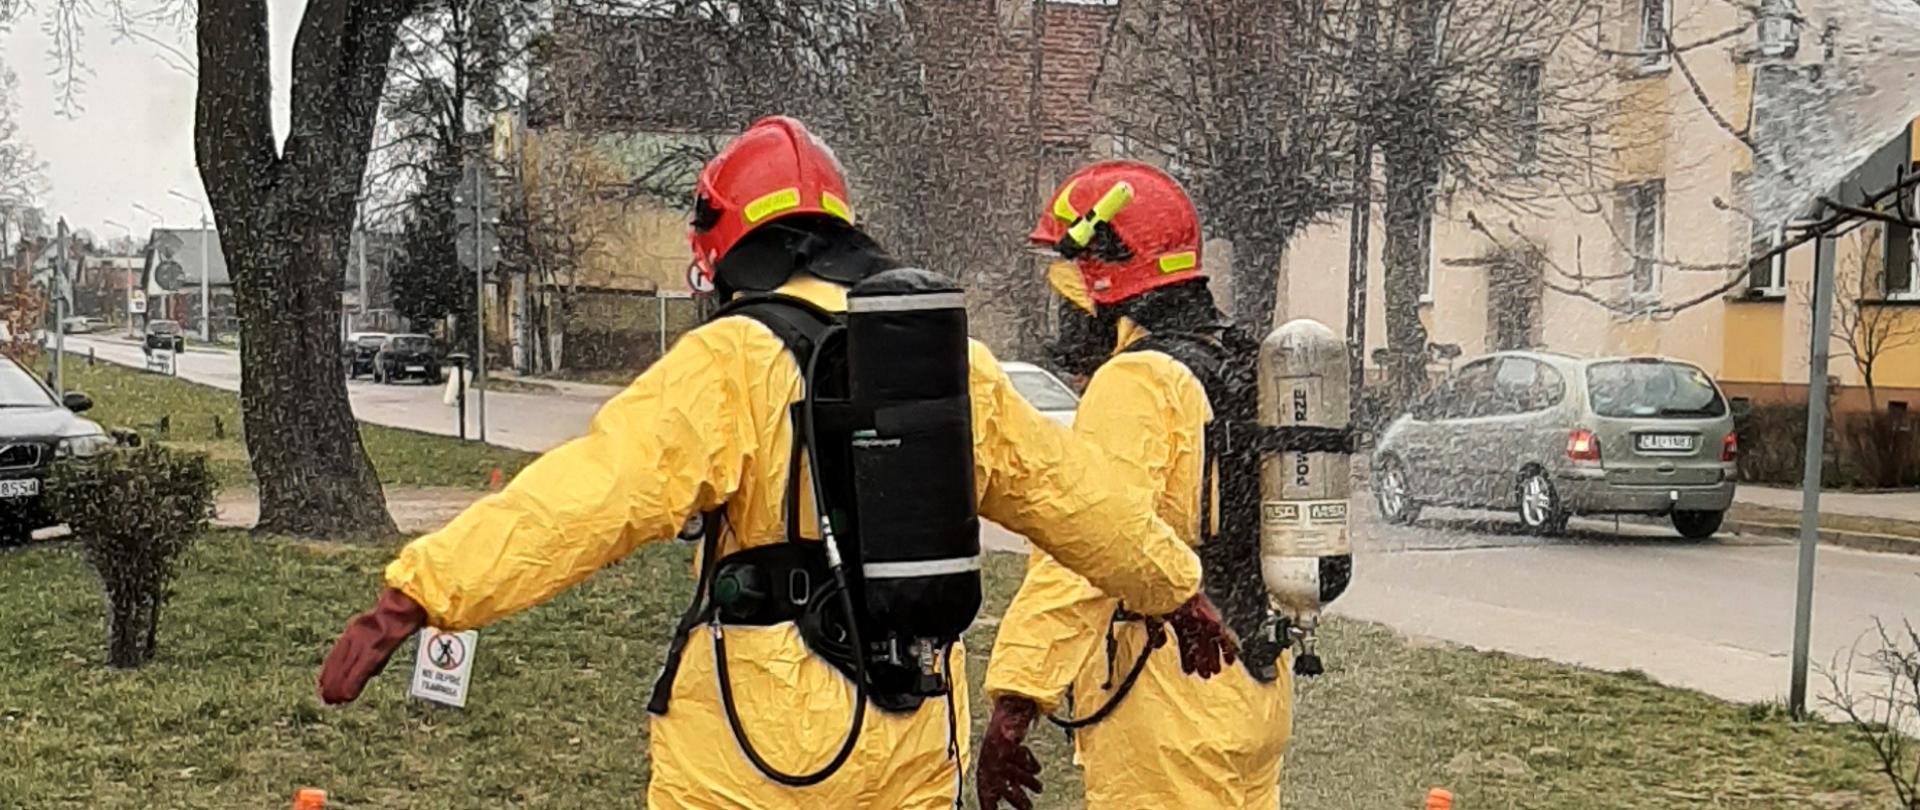 Zdjęcie przedstawia dwóch strażaków ubranych w żółte kombinezony. Na głowach mają czerwone hełmy, a na plecach czarne aparaty ochrony układu oddechowego. Osoby stoją między 3 pomarańczowymi pachołkami na trawie. W tle widać budynki mieszkalne oraz drzewa.